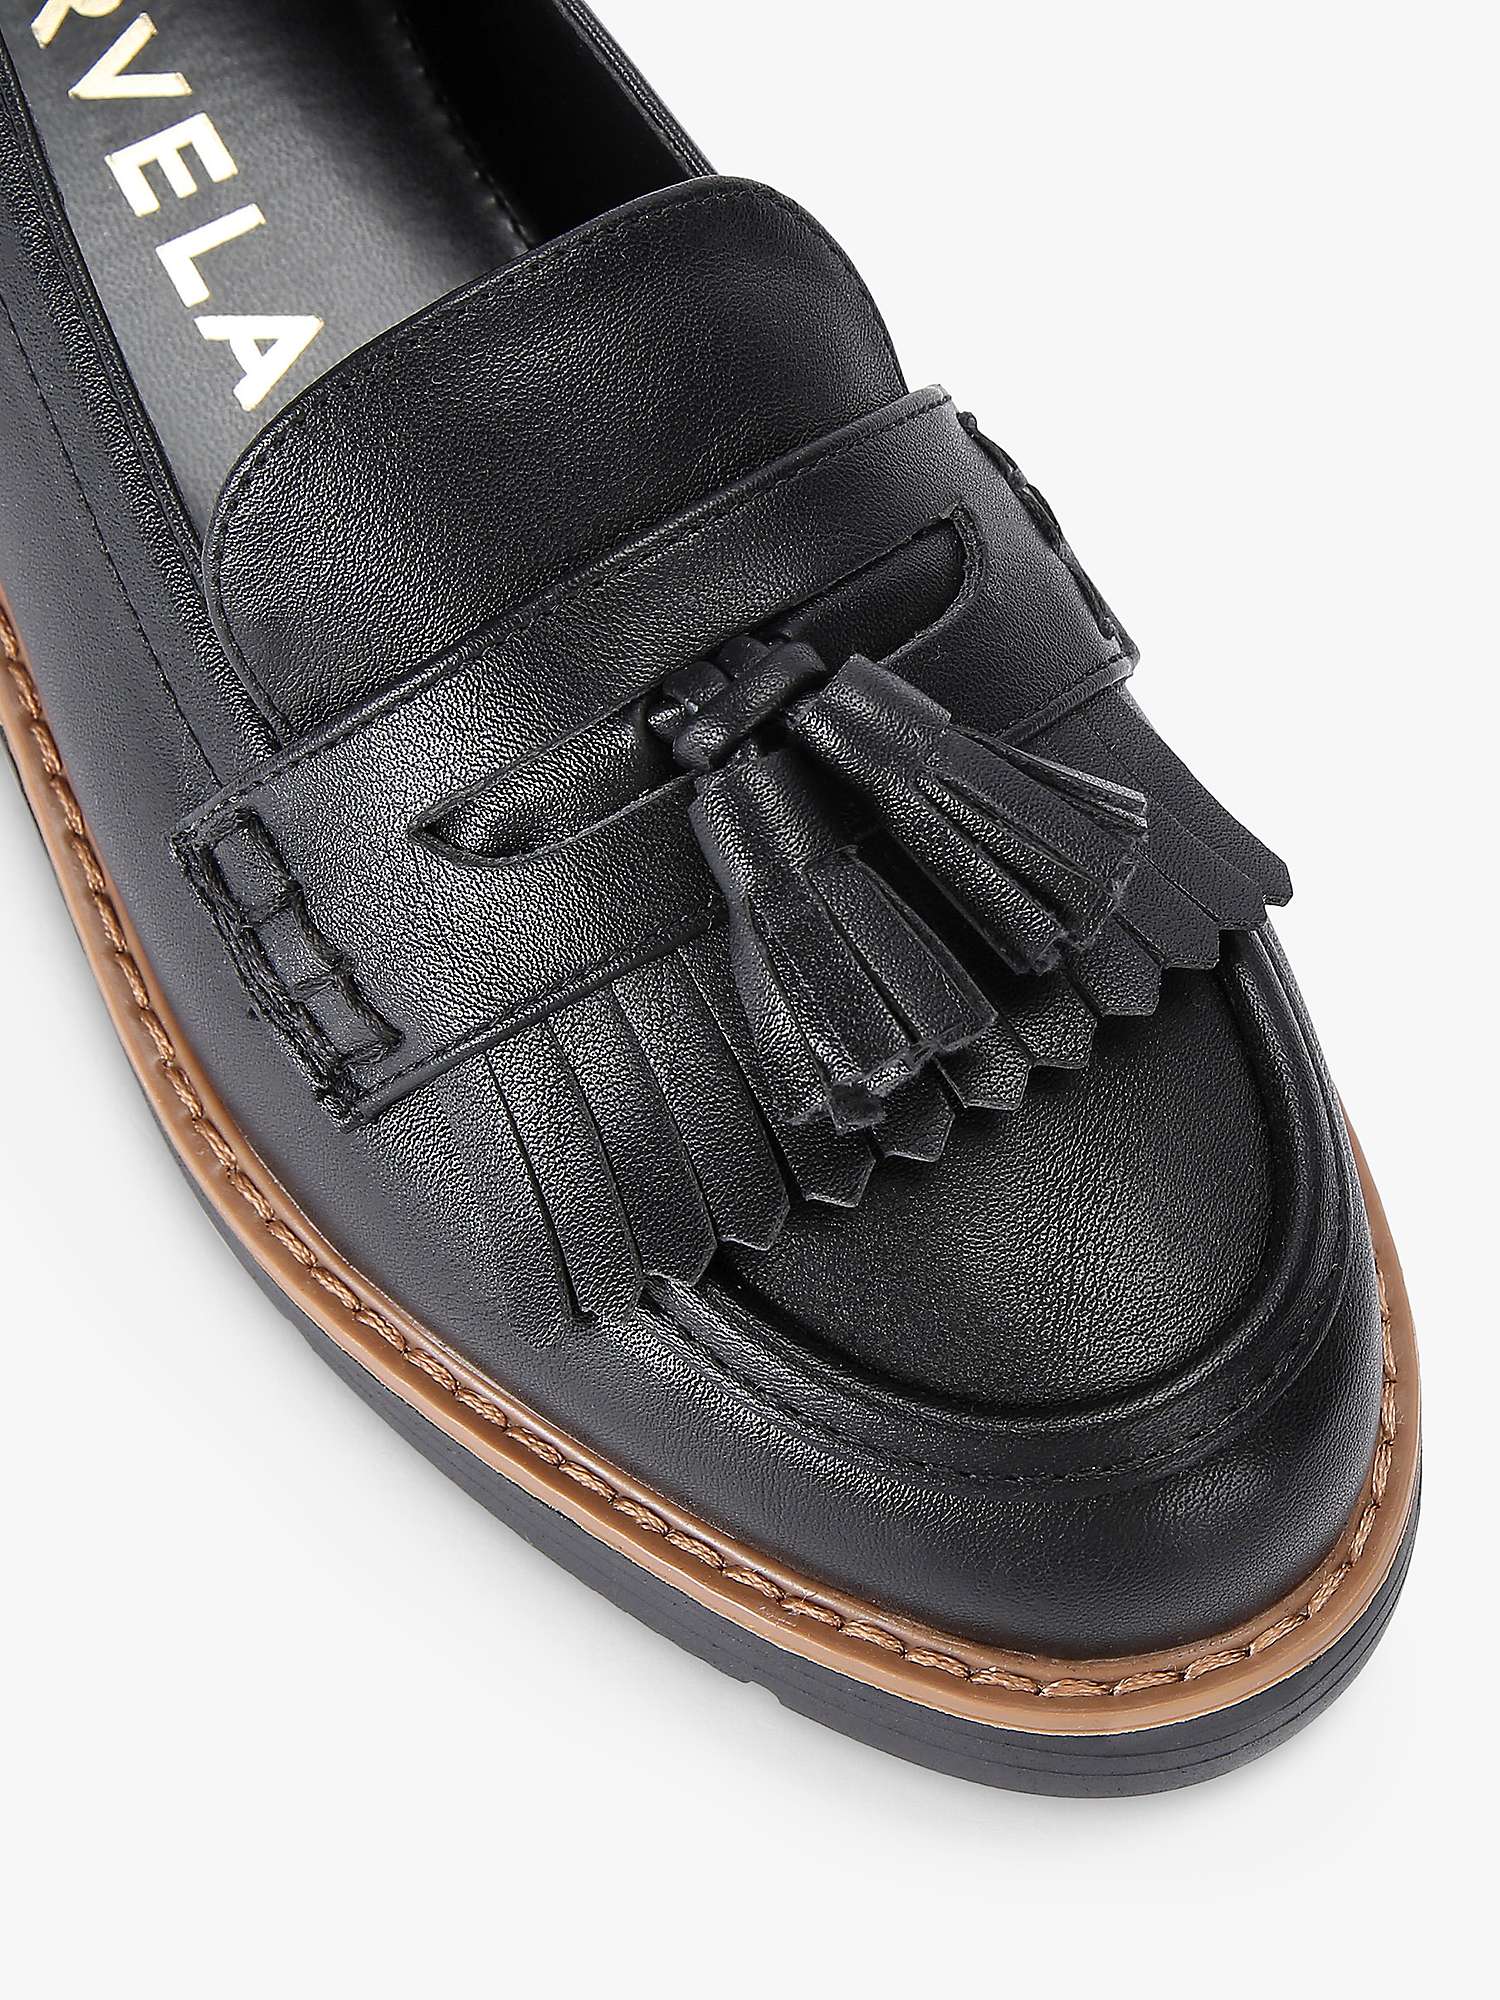 Buy Carvela Sky Tassel Slip-On Loafers, Black Online at johnlewis.com